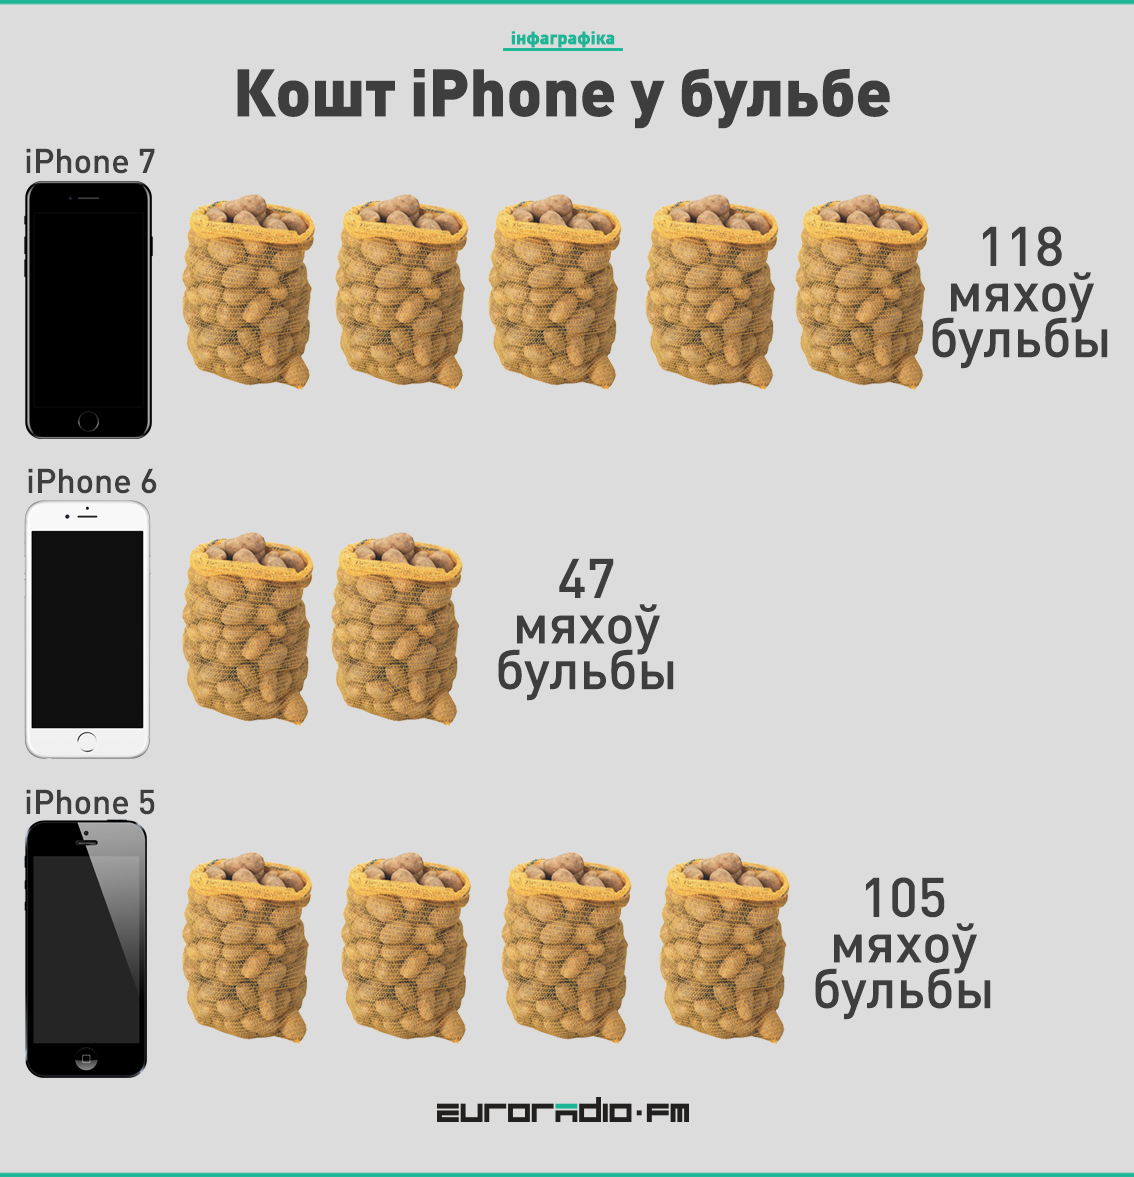 Сёмы iPhone у Беларусі каштуе як 118 мяхоў бульбы